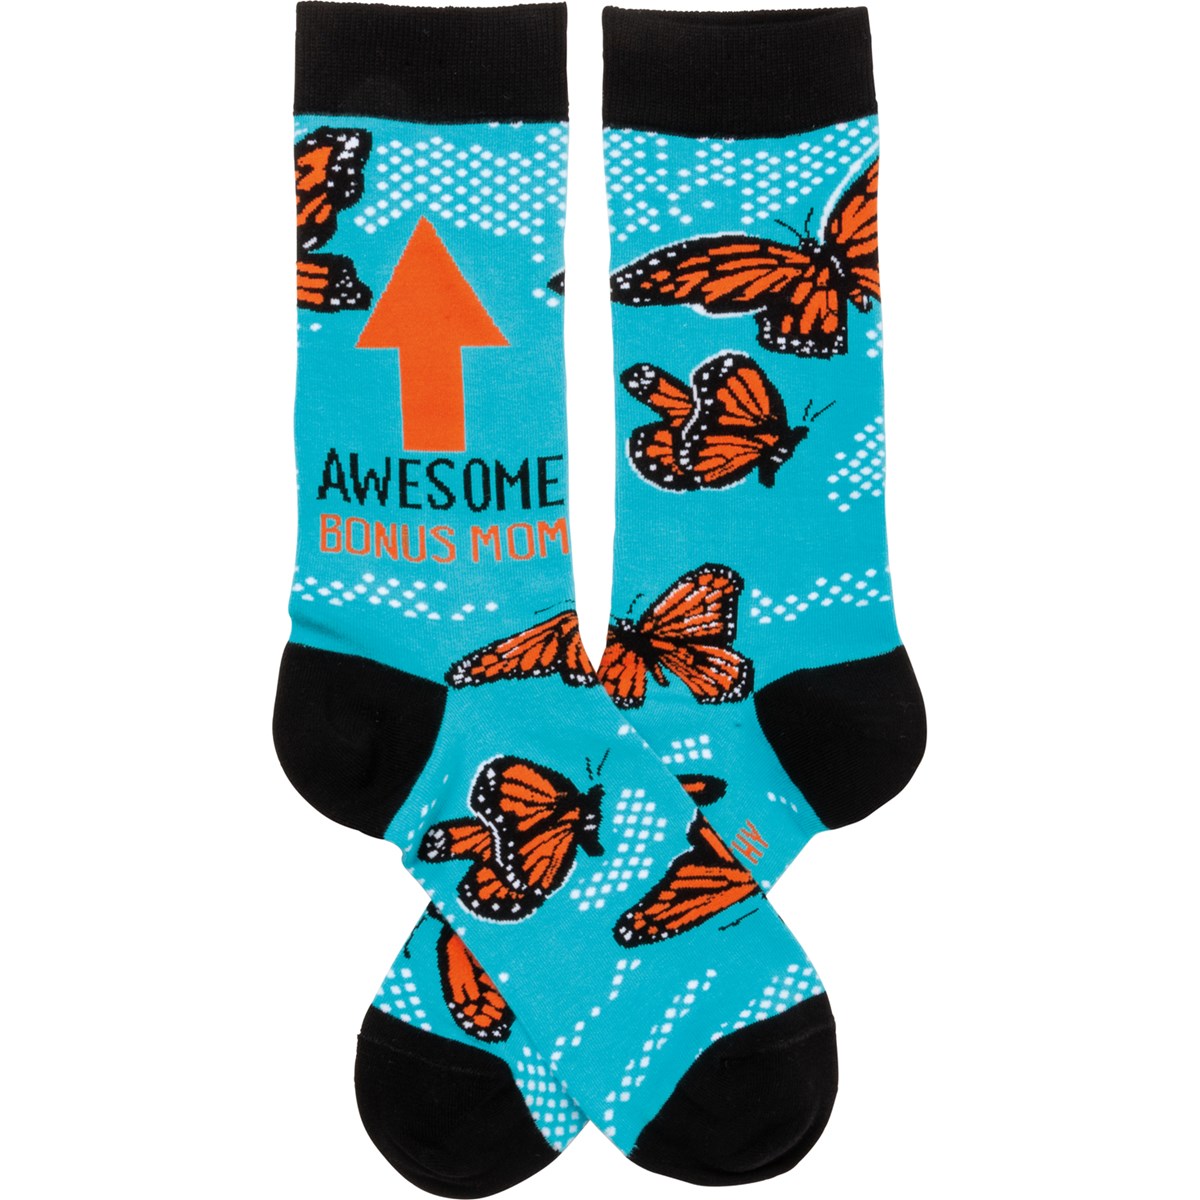 Awesome Bonus Mom Socks - Cotton, Nylon, Spandex